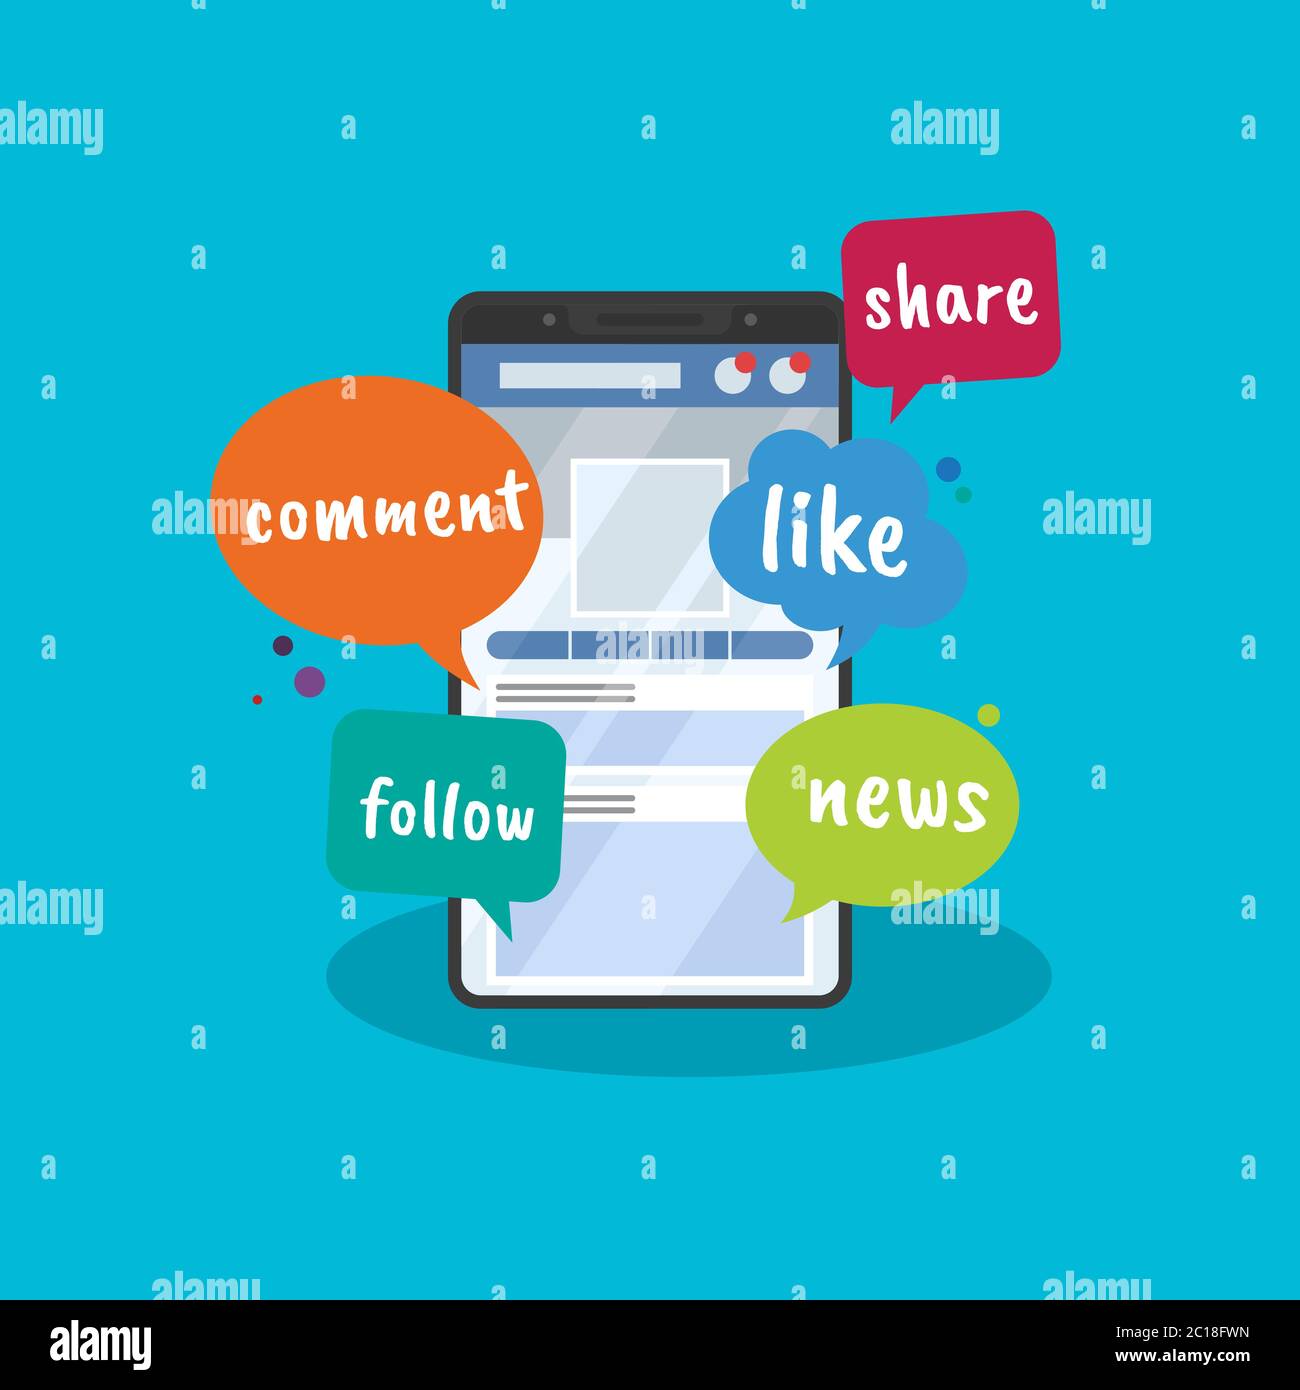 Immagine vettoriale dell'accesso ai social media tramite smartphone. Adatto per la promozione di social media, attività interattive, condivisione, fare amici Illustrazione Vettoriale